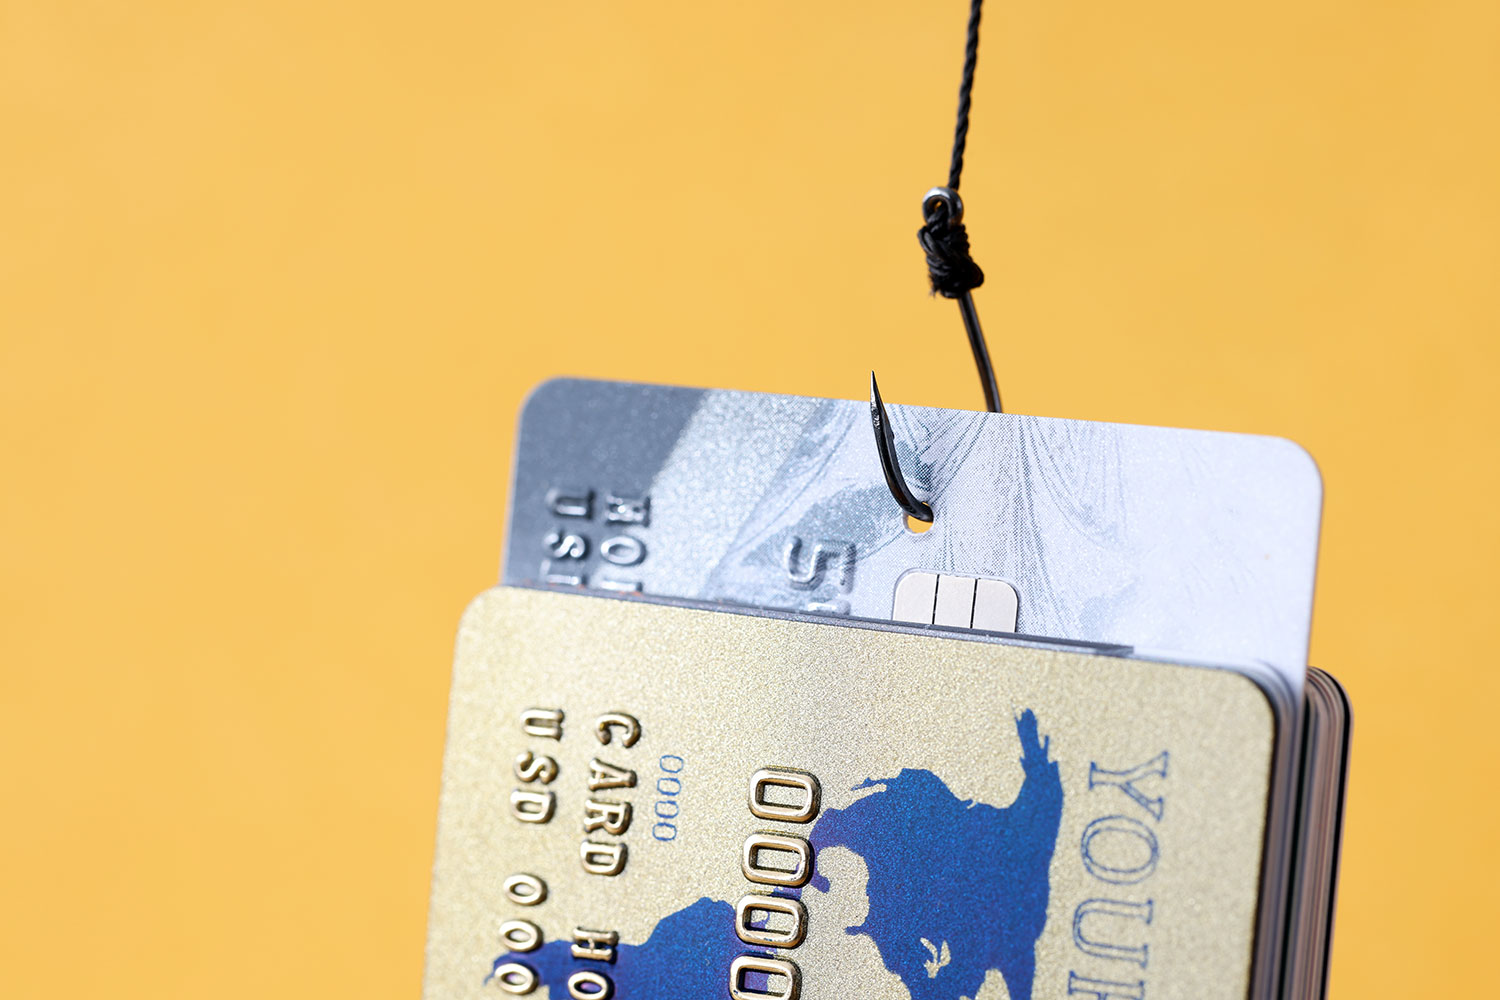 phishing bancario con tarjetas de crédito